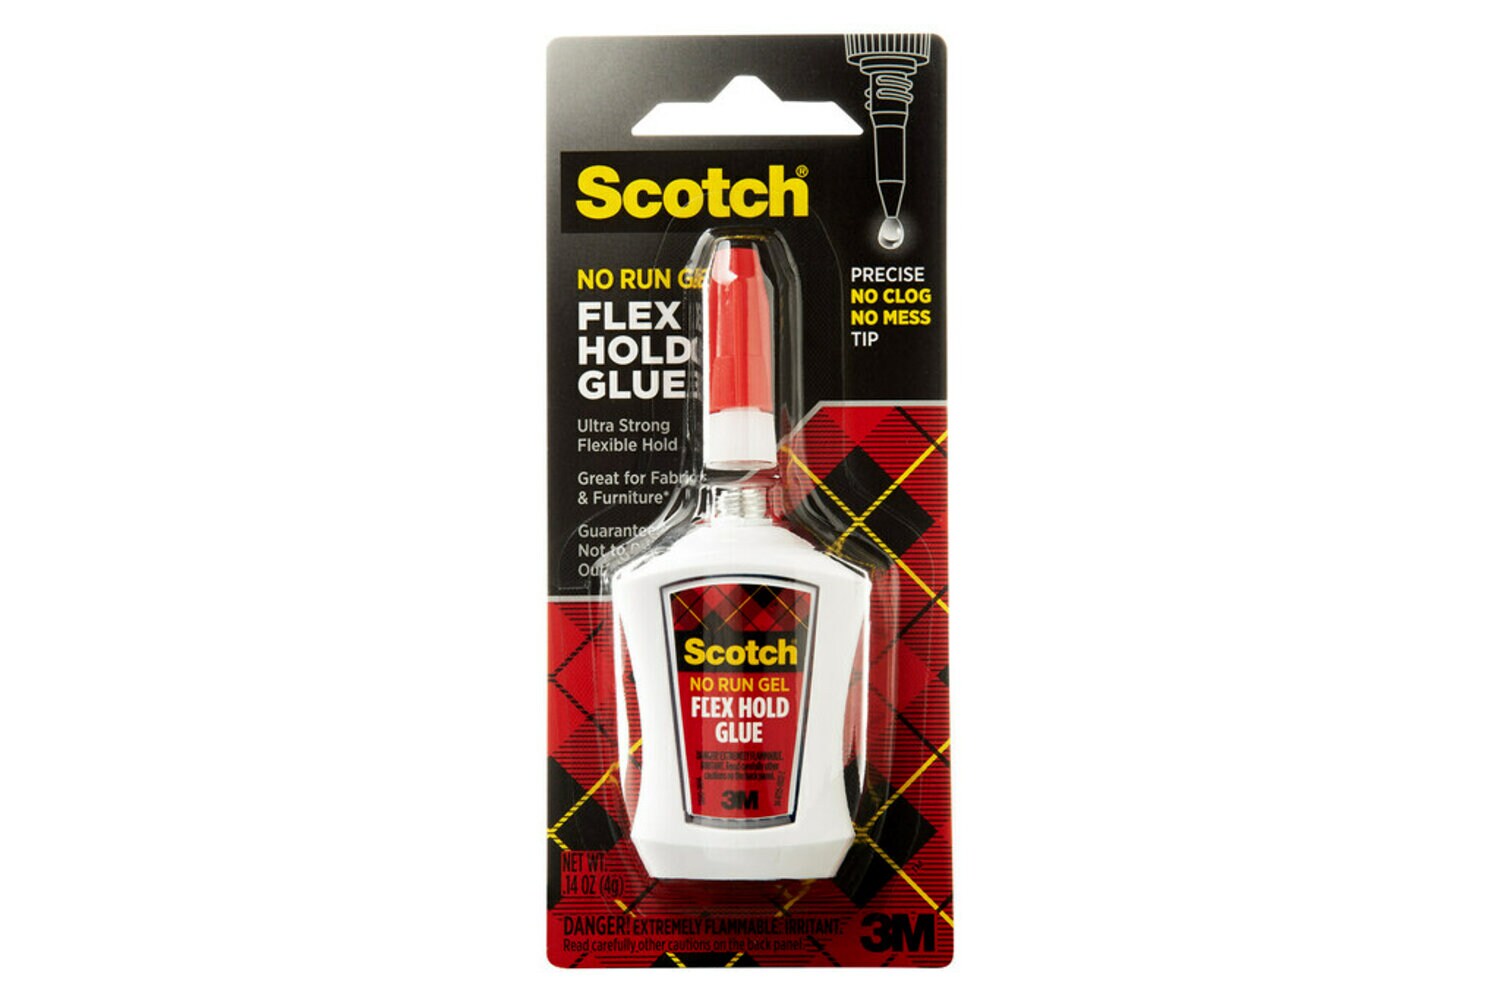 7010290878 - Scotch Flex Hold Glue in Precision Applicator ADH670, .14 oz (4 g)